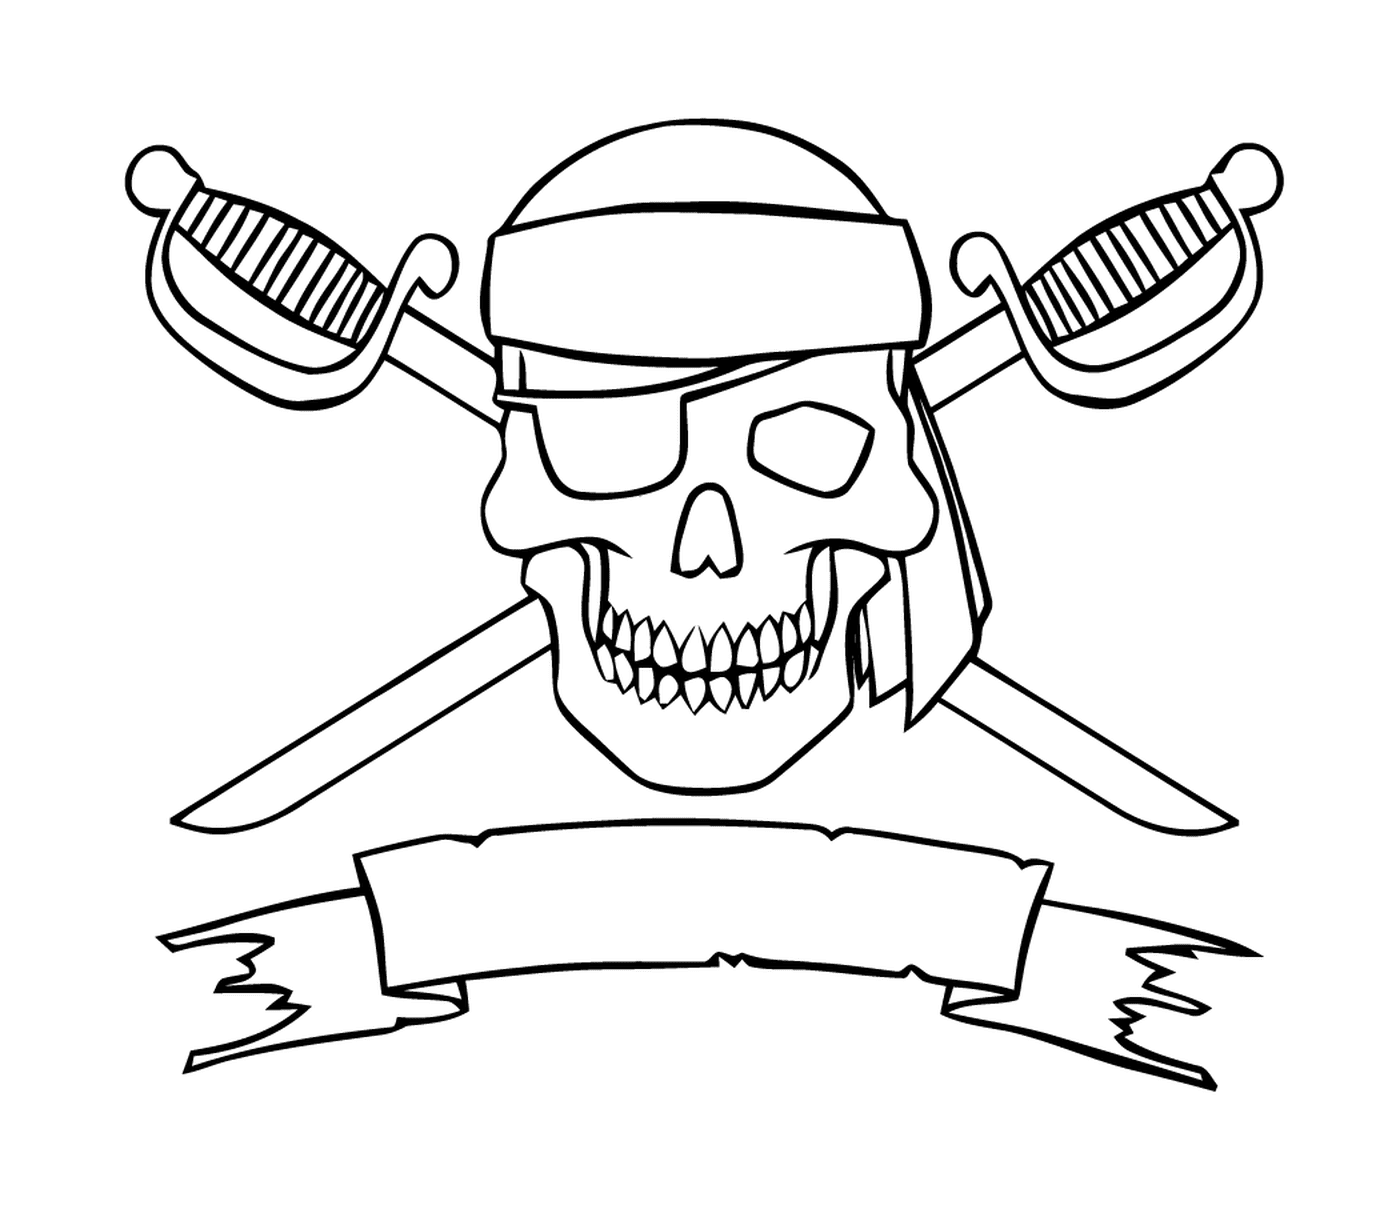  Страшный пиратский логотип, перекрёстные мечи 